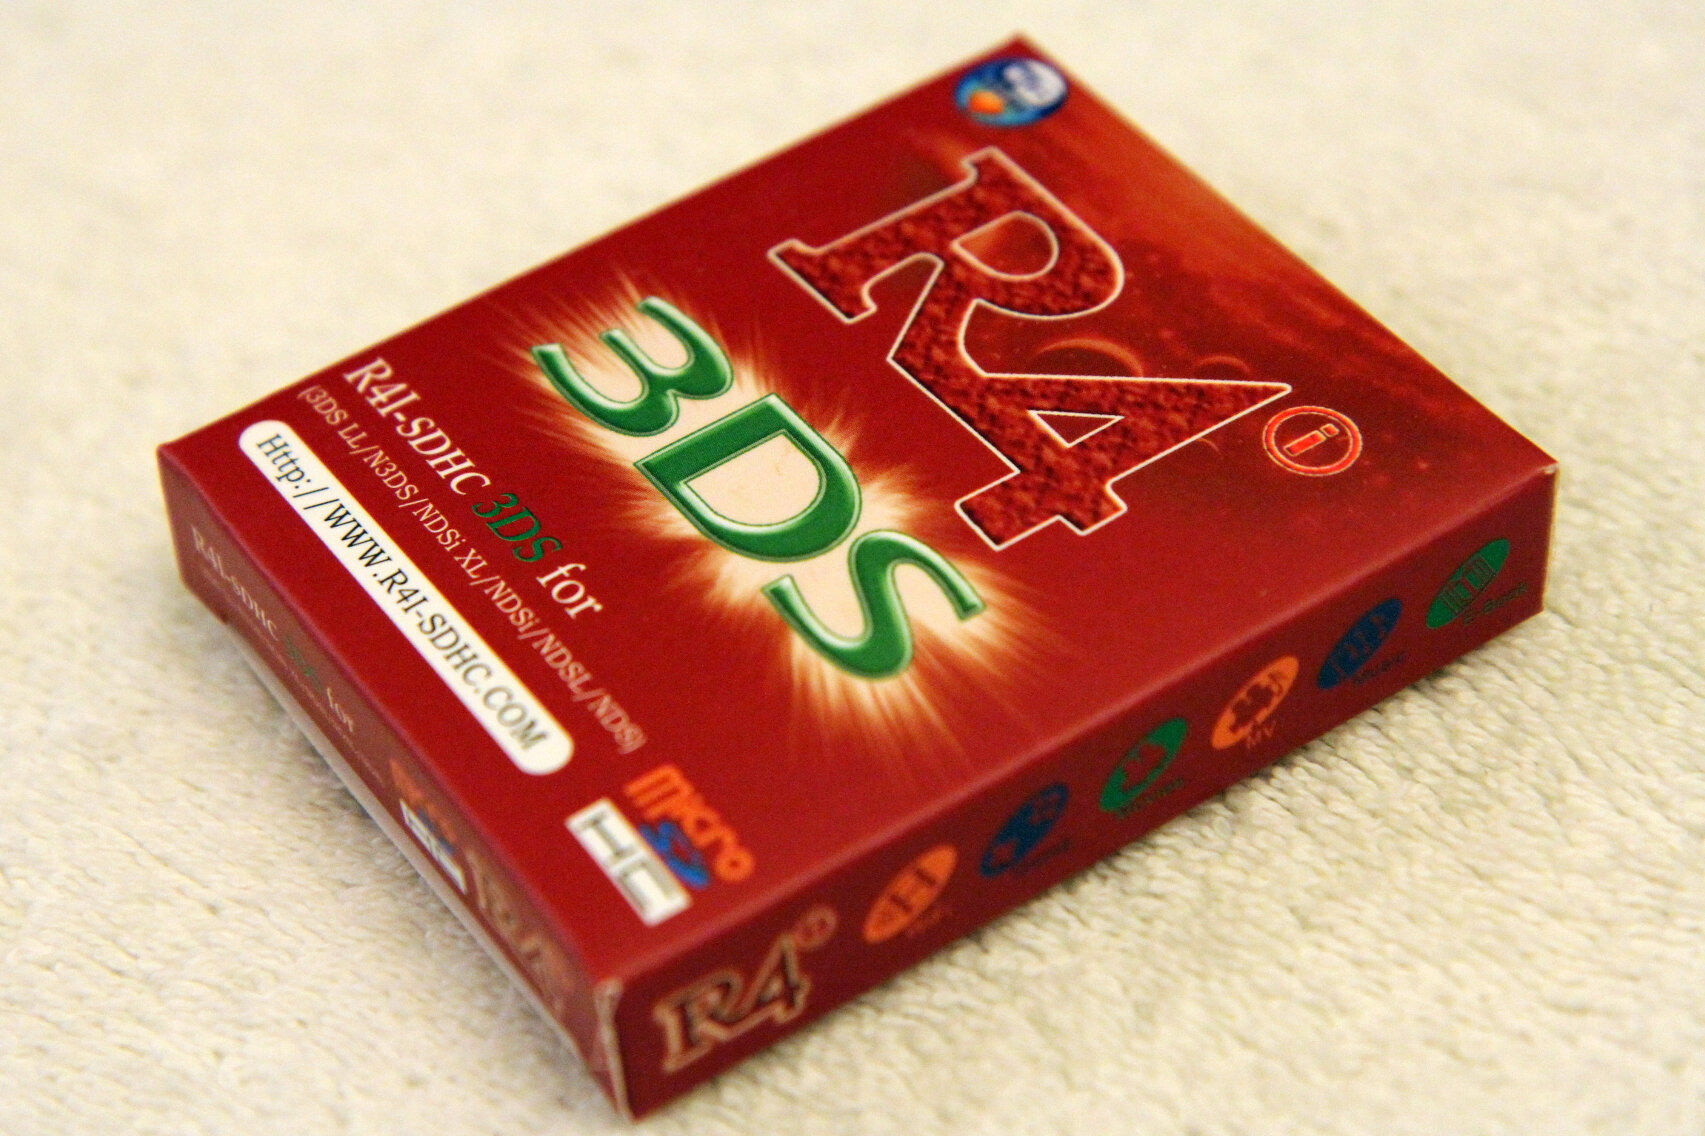 Meilleur R4 3DS cartes pour jouer des jeux DS - Linker Lovers